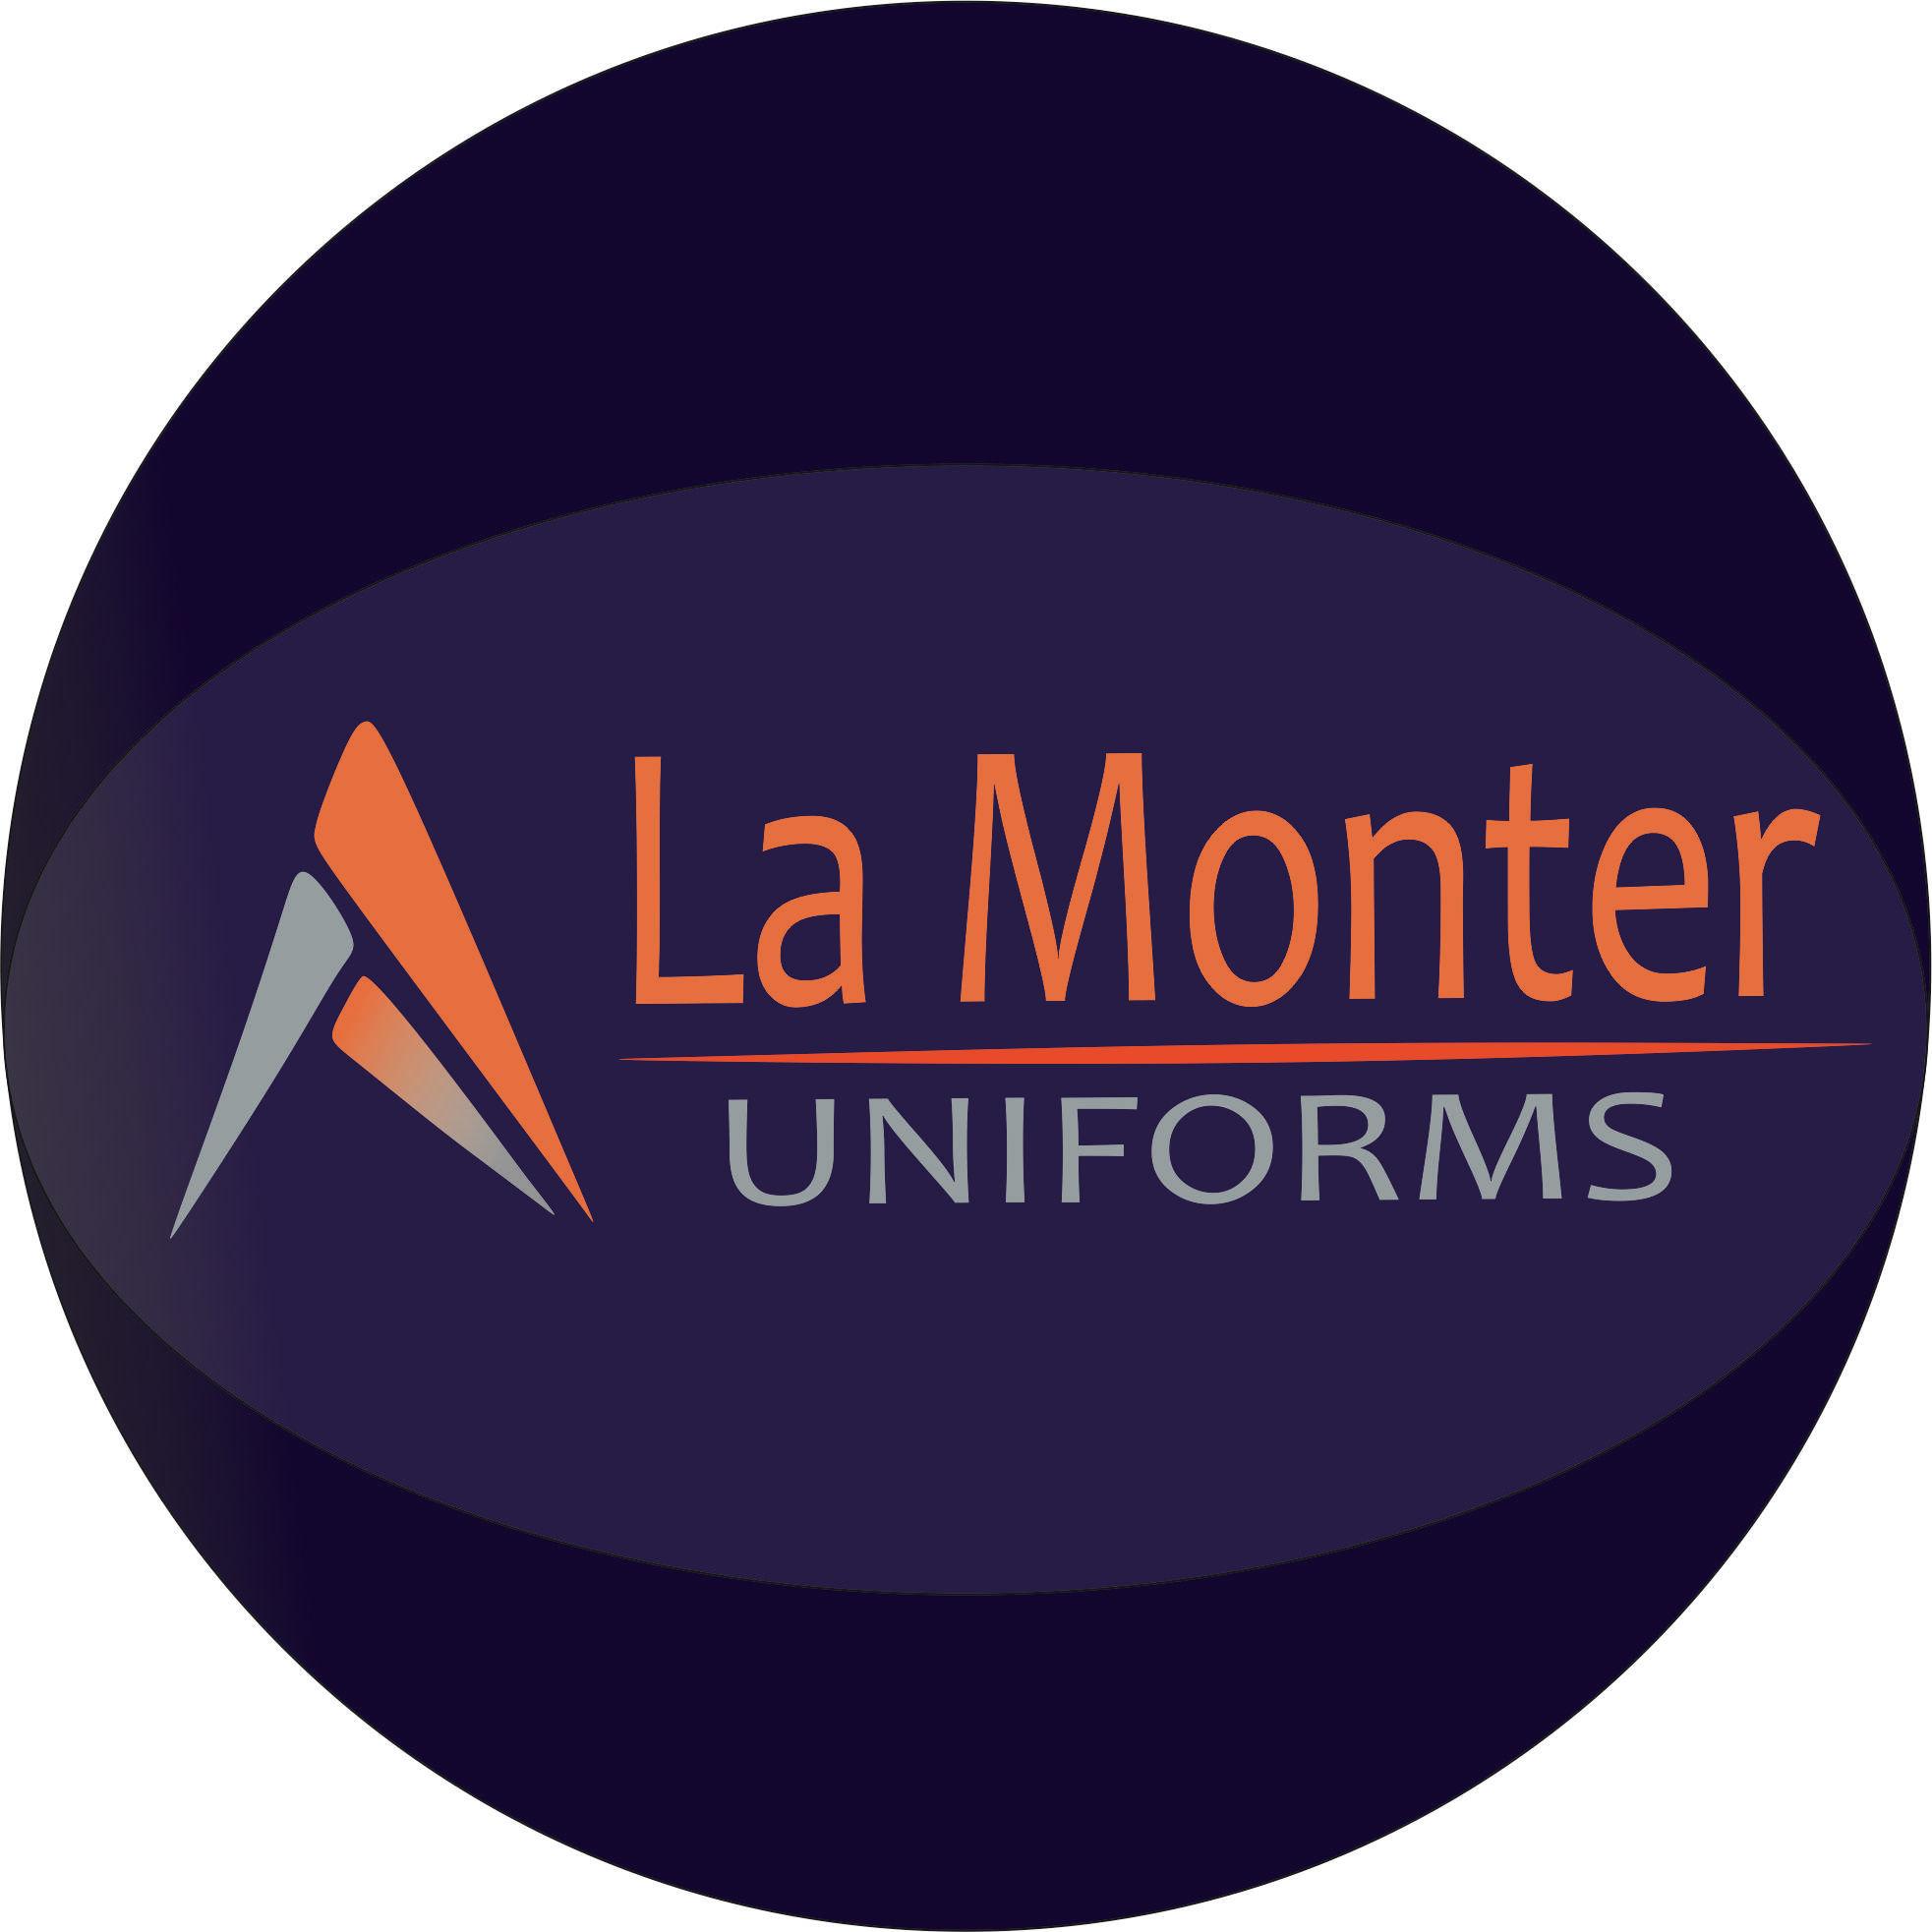 La Monter Uniforms